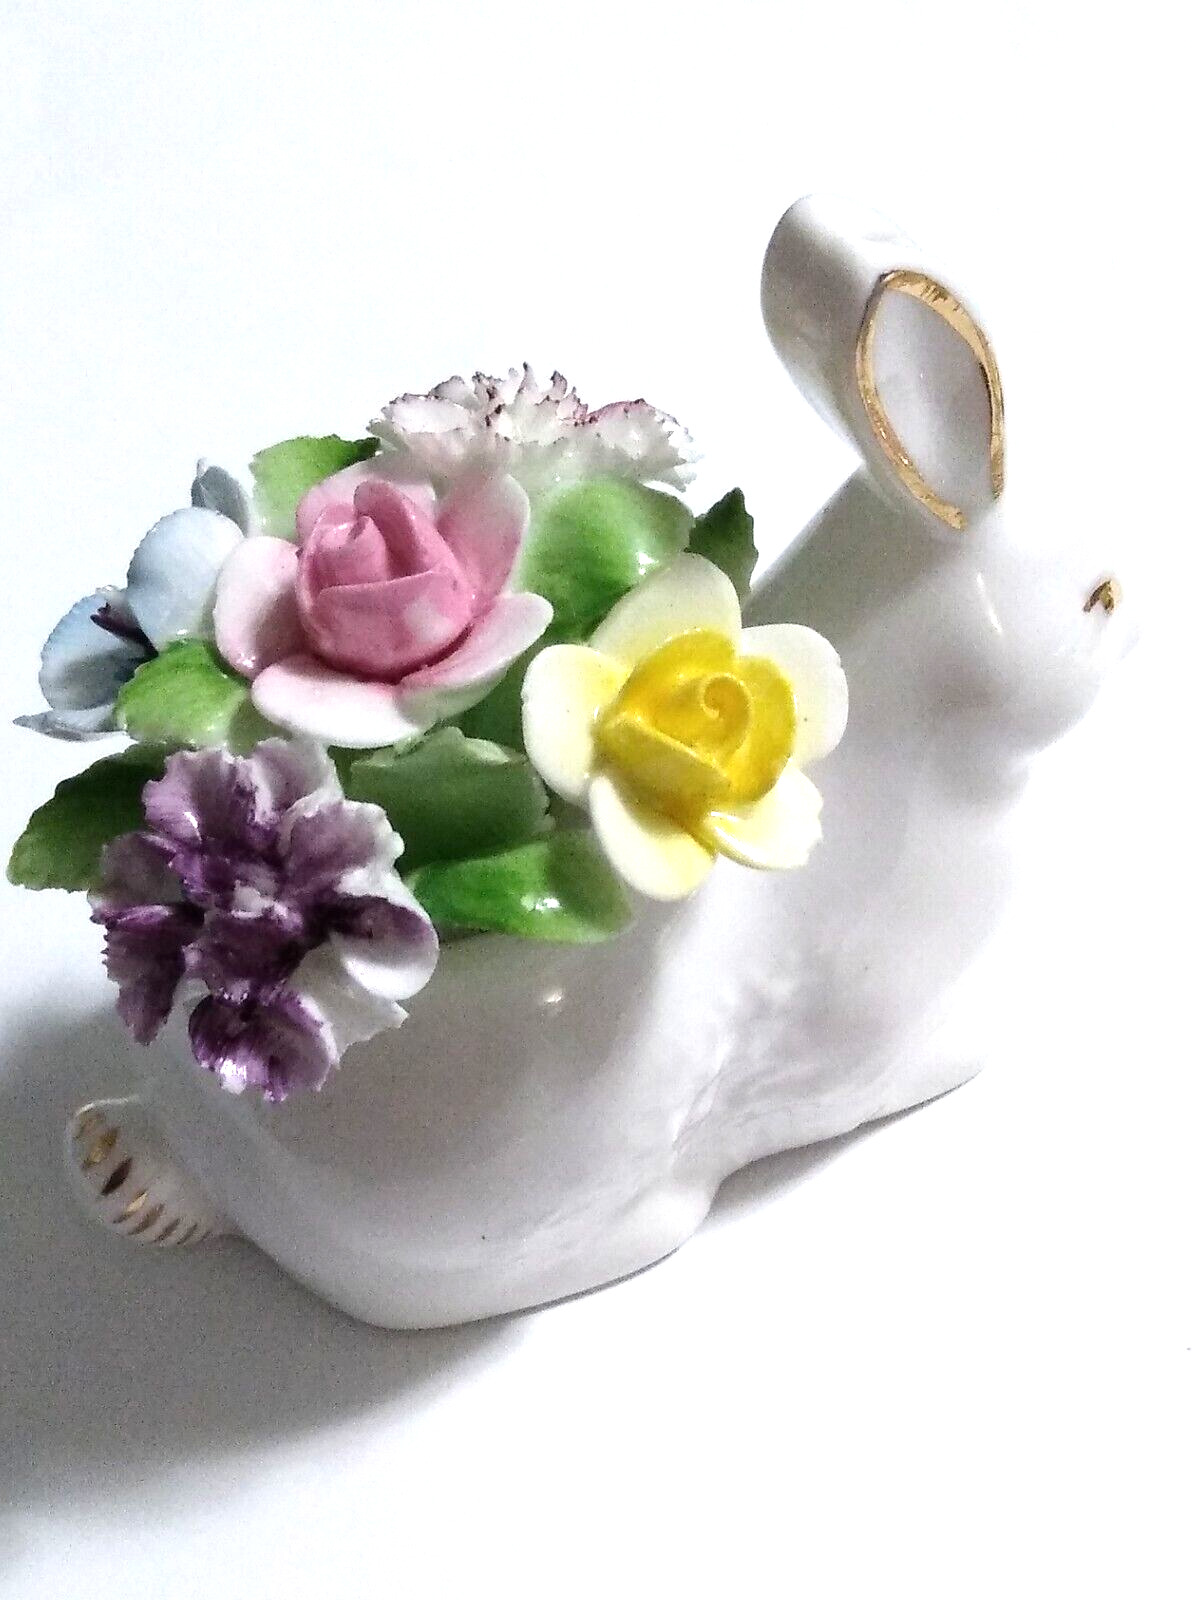 VTG LOVELY ROYAL DOULTON BONE CHINA Rabbit Potter Figurine CAPIDOMONTE FLOWERS